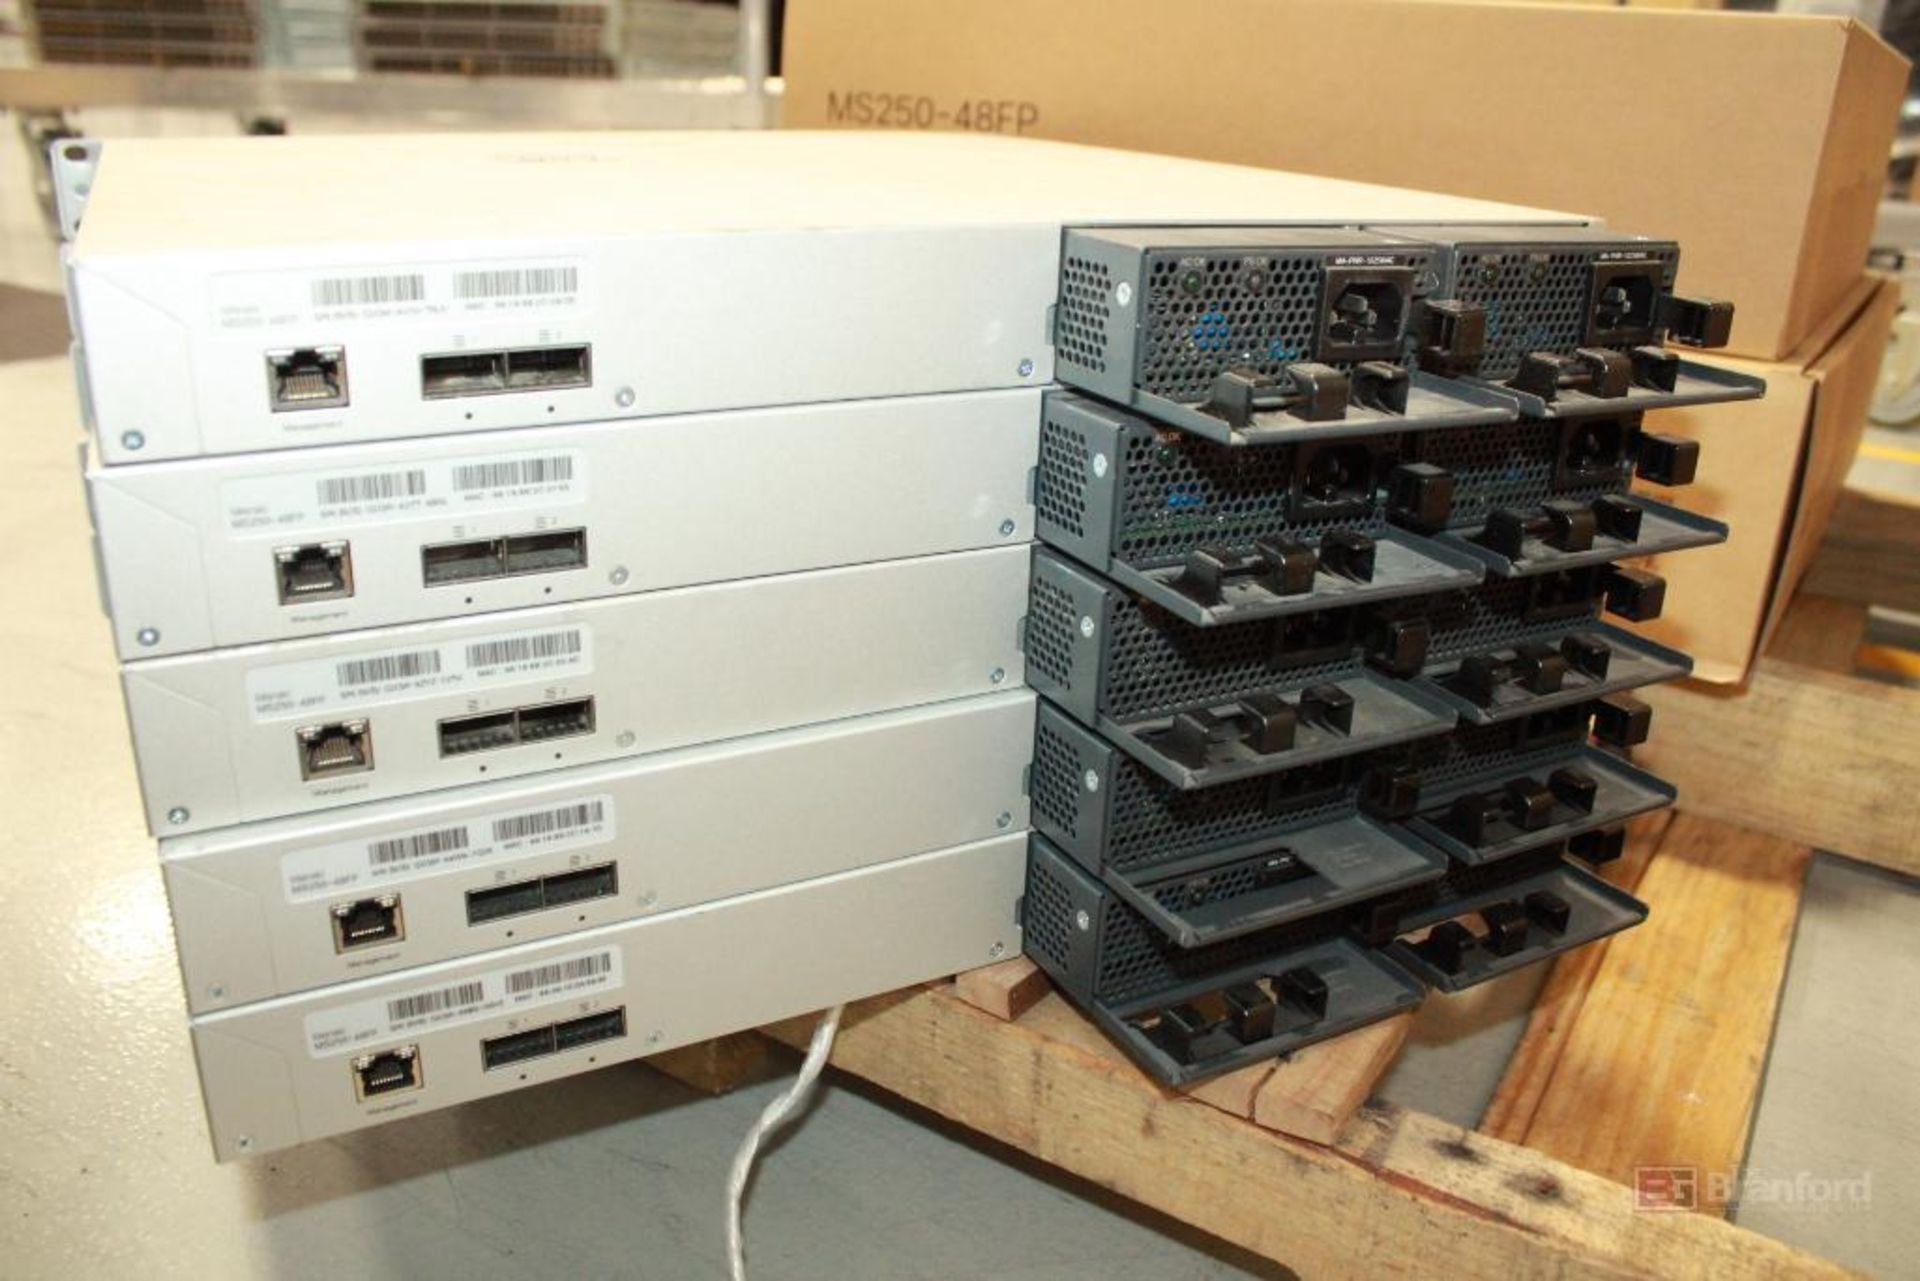 (5) Cisco Meraki MS250-48FP Switches - Image 3 of 3